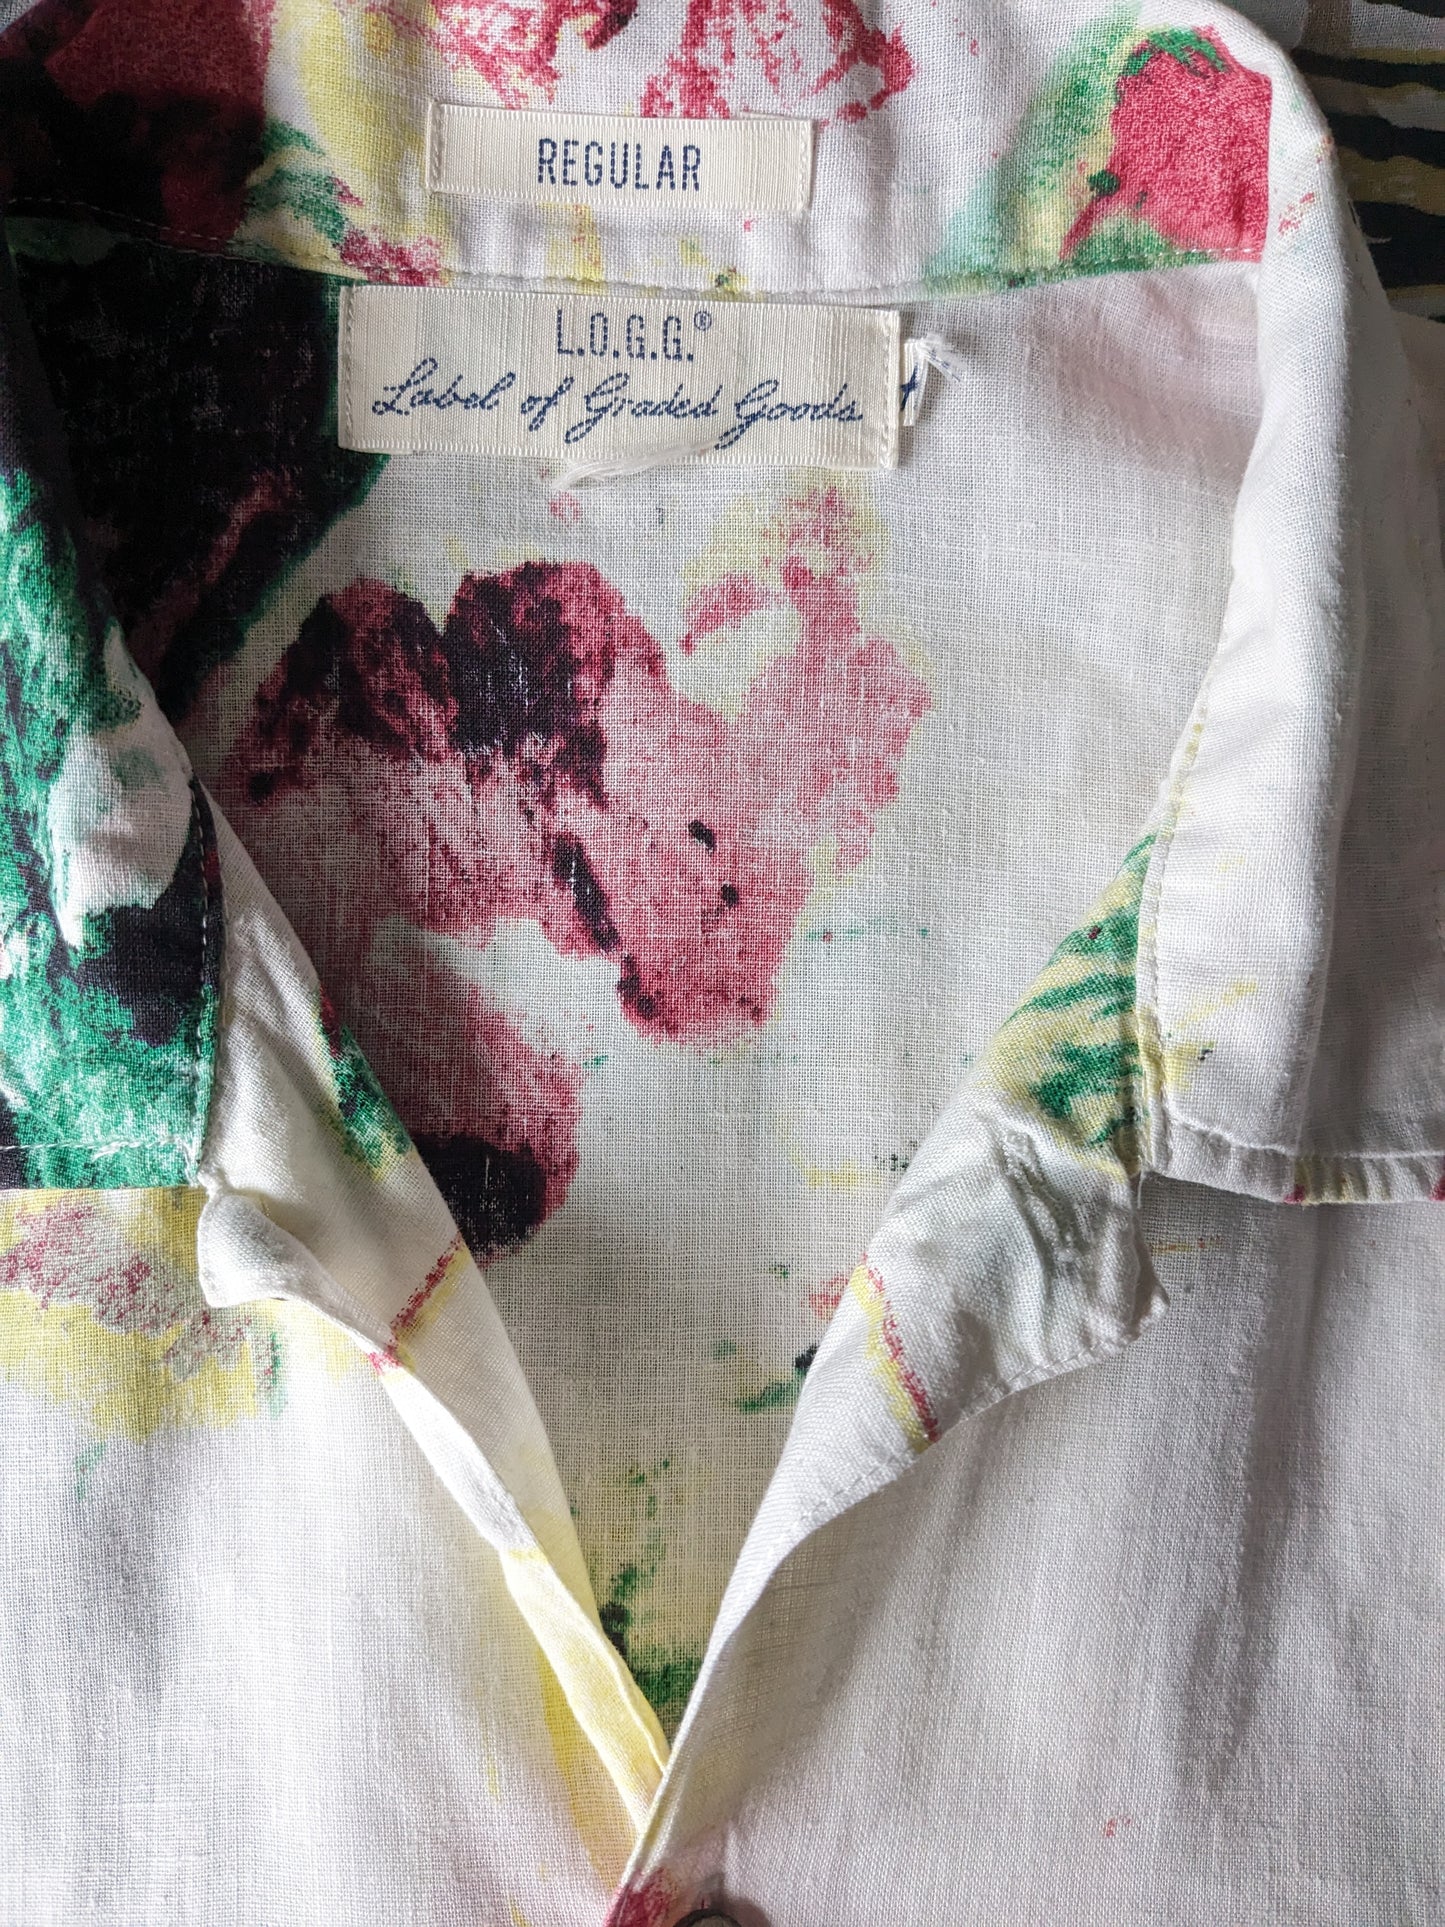 H & M Logg Print Shirt Kurzarm. Beige rot gelbgrüne Blüten drucken. Größe L. Regelmäßige Passform.